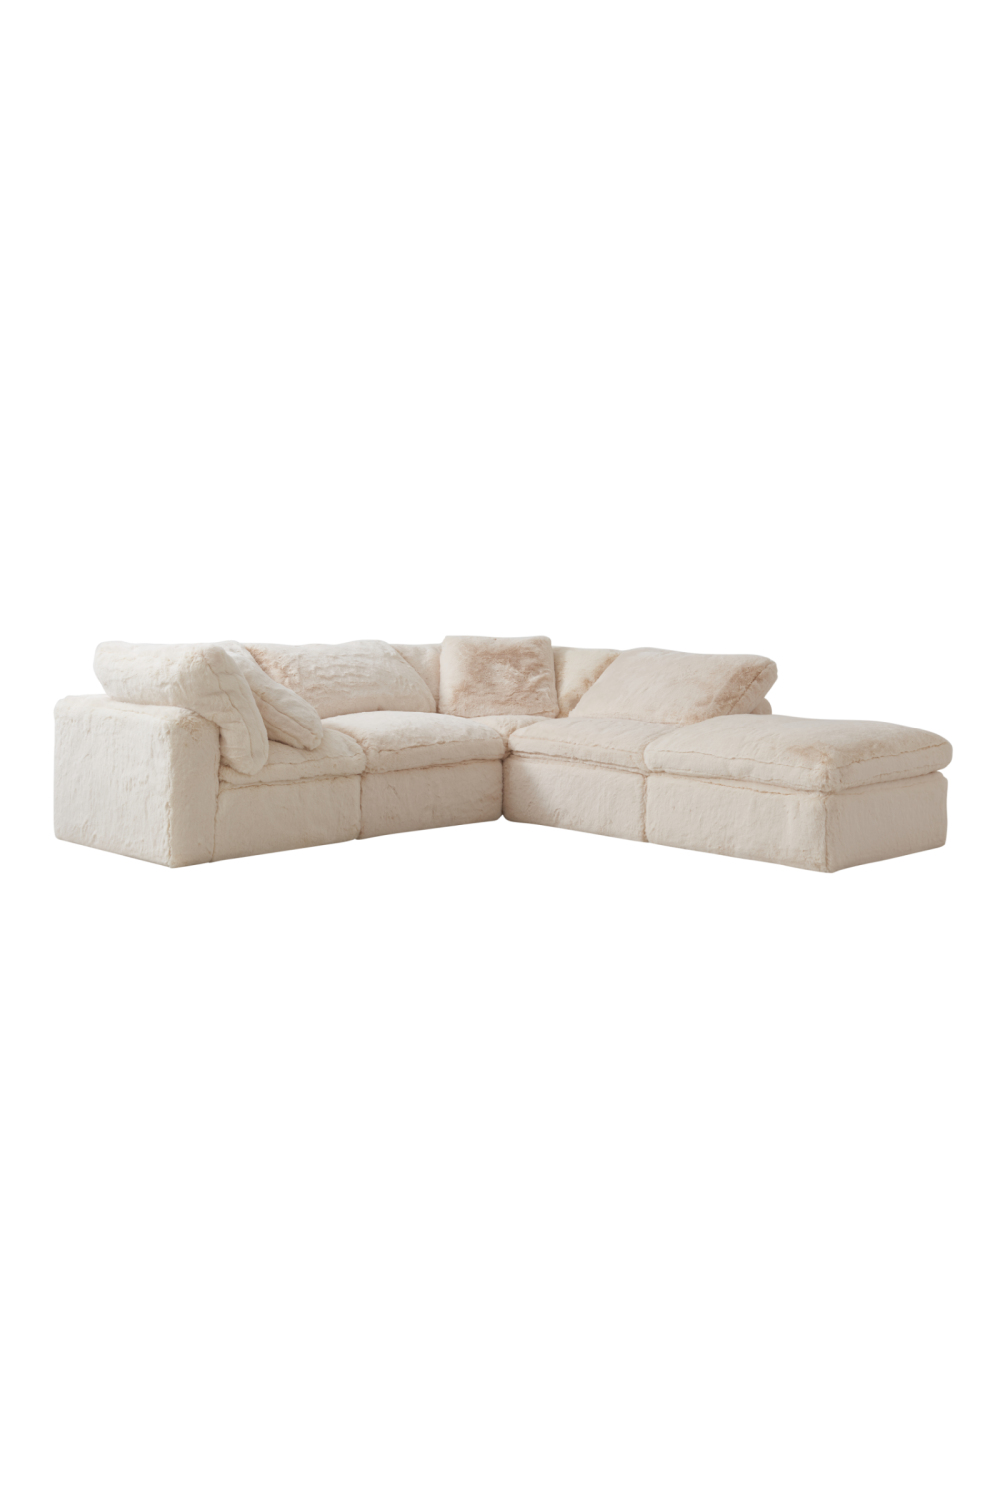 Cream Fur Sectional Sofa | Andrew Martin Truman Junior | Oroa.com